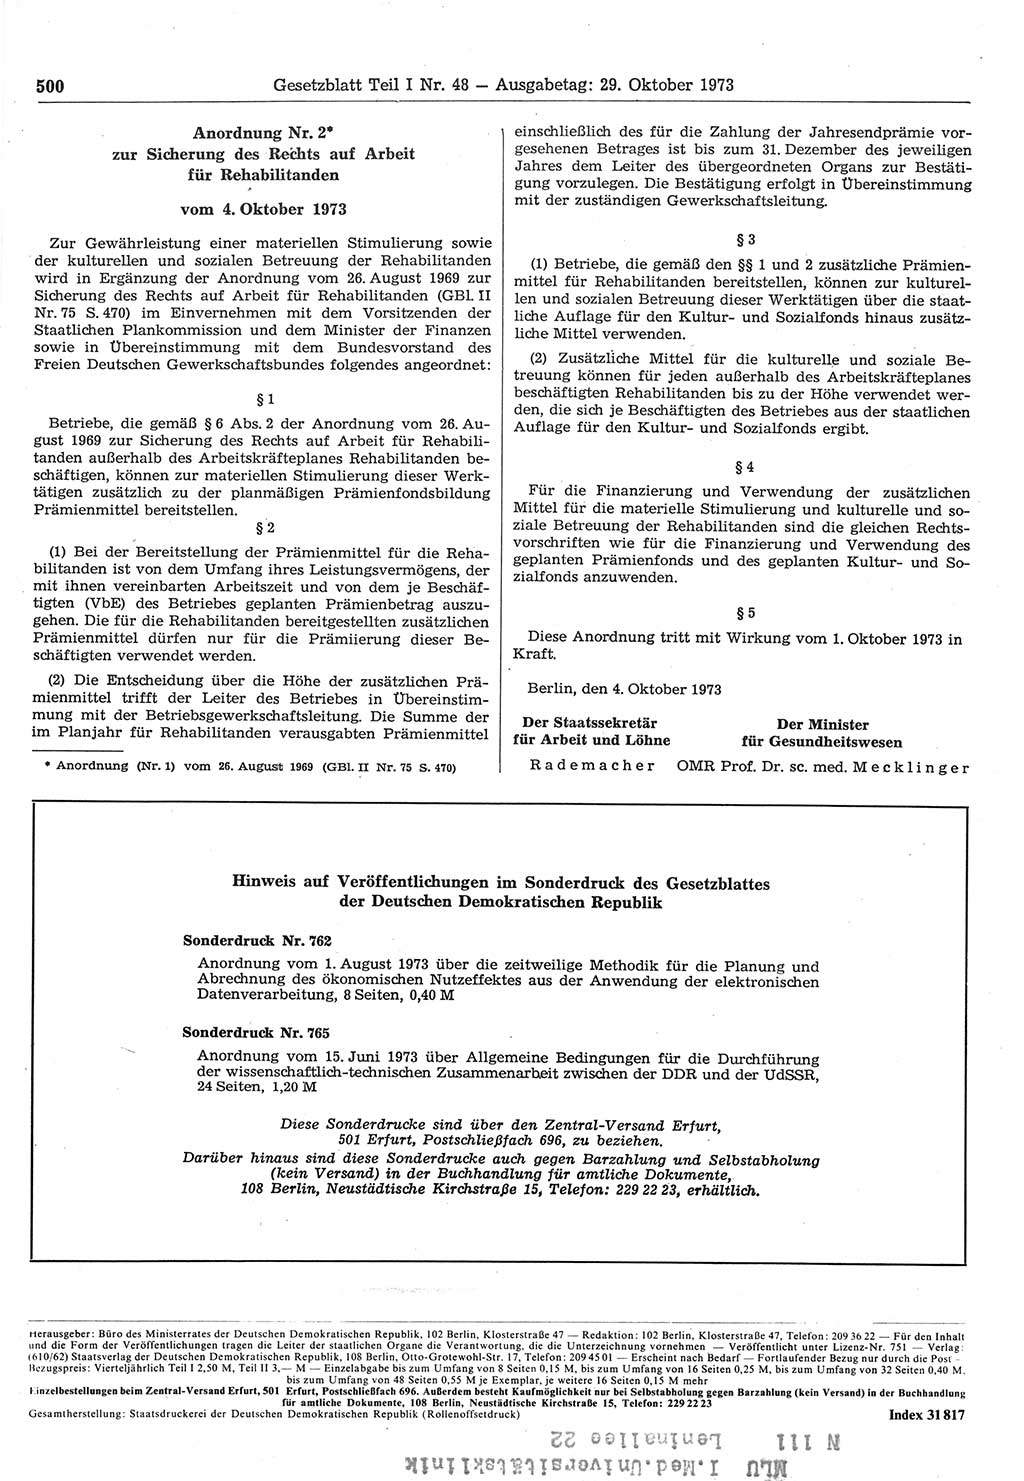 Gesetzblatt (GBl.) der Deutschen Demokratischen Republik (DDR) Teil Ⅰ 1973, Seite 500 (GBl. DDR Ⅰ 1973, S. 500)